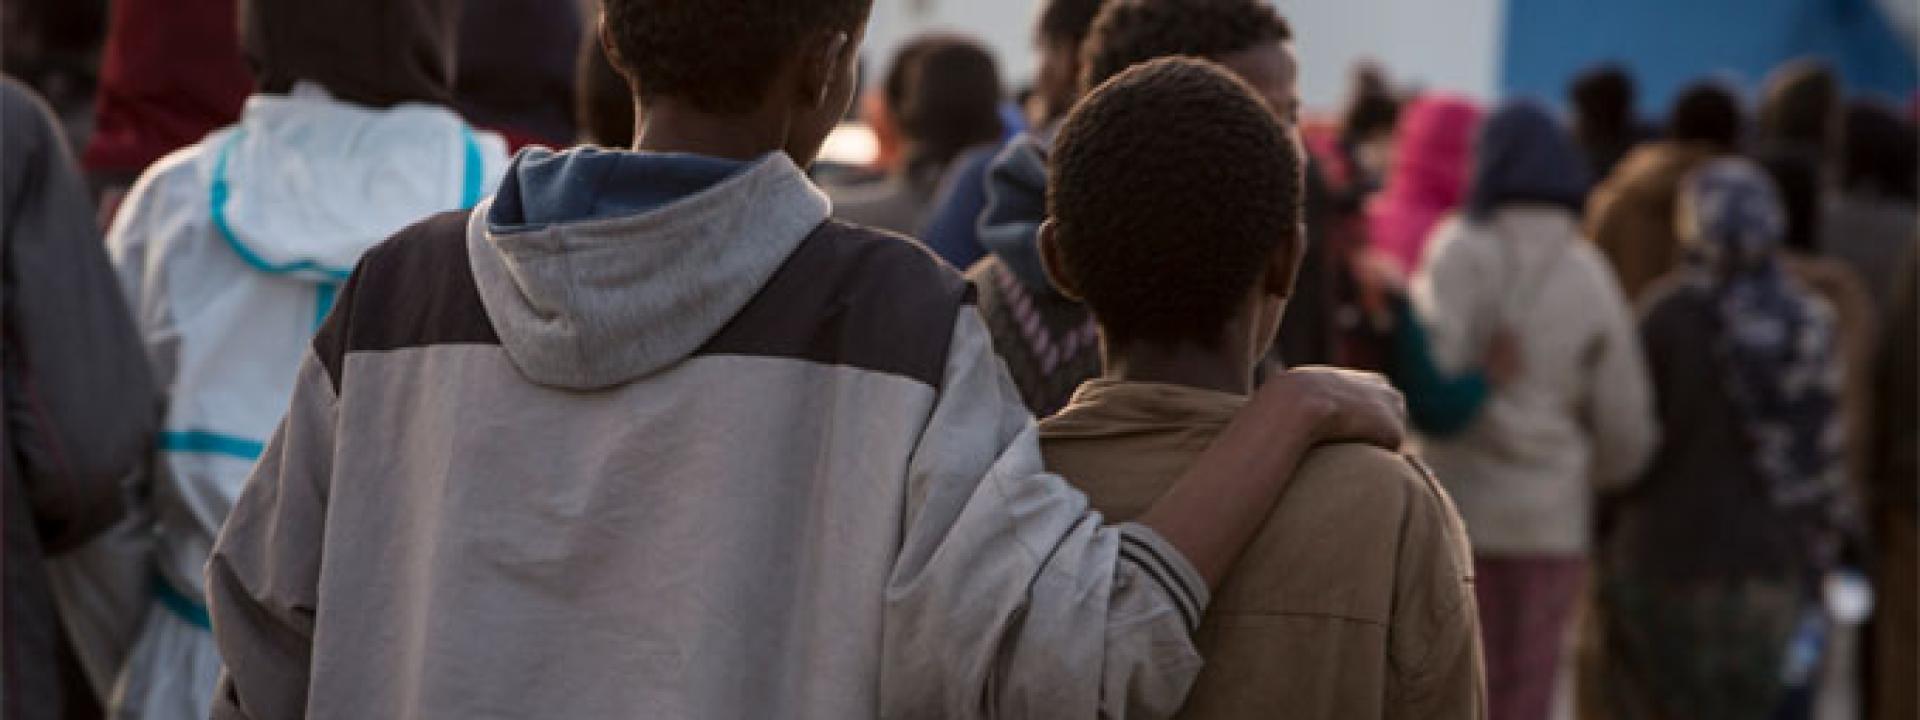 Marche - Prosegue la fuga di migranti minorenni dal centro di accoglienza di Senigallia